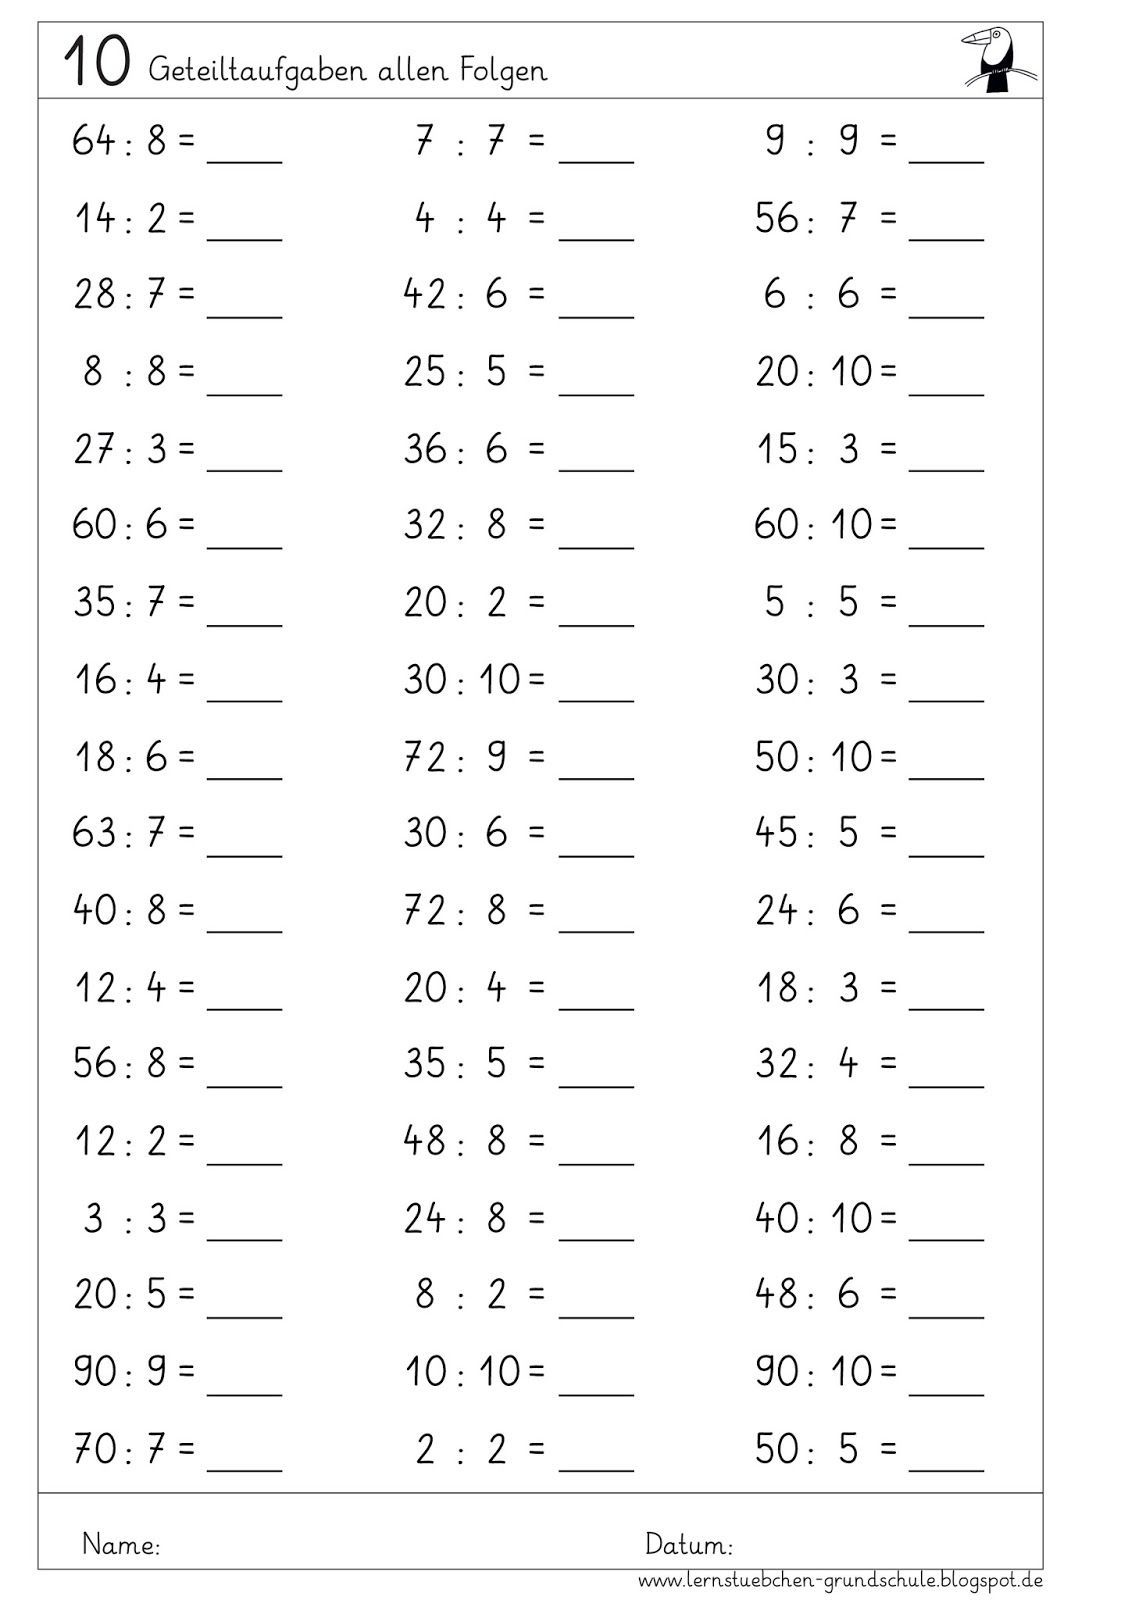 Тренажер по математике таблица умножения на 2 3 4